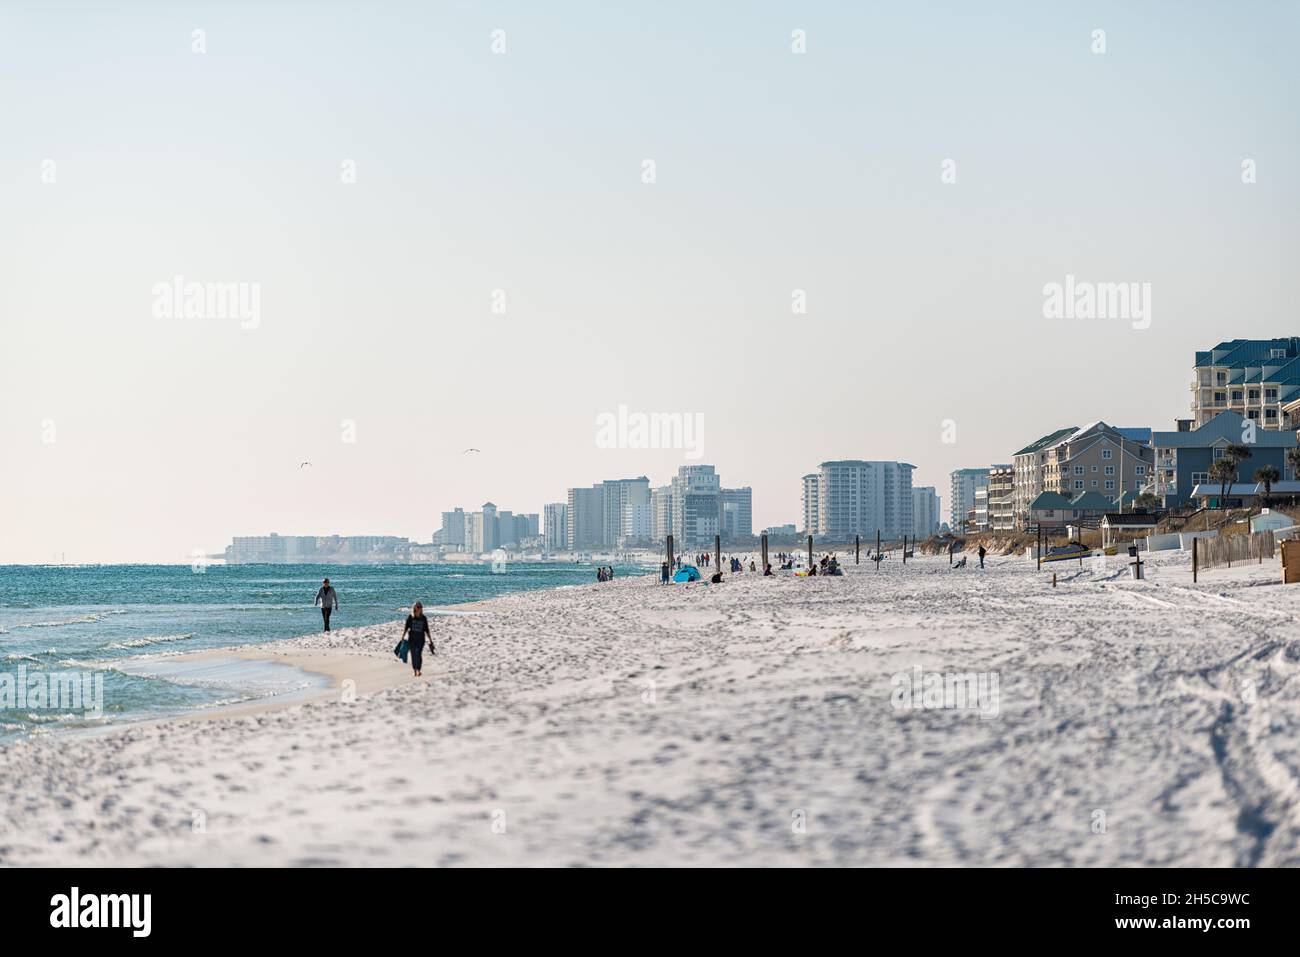 Miramar Beach, Stati Uniti d'America - 13 gennaio 2021: Città di spiaggia vicino a Destin, Florida Panhandle golfo del messico con acqua di riva e persone a piedi edifici in dista Foto Stock